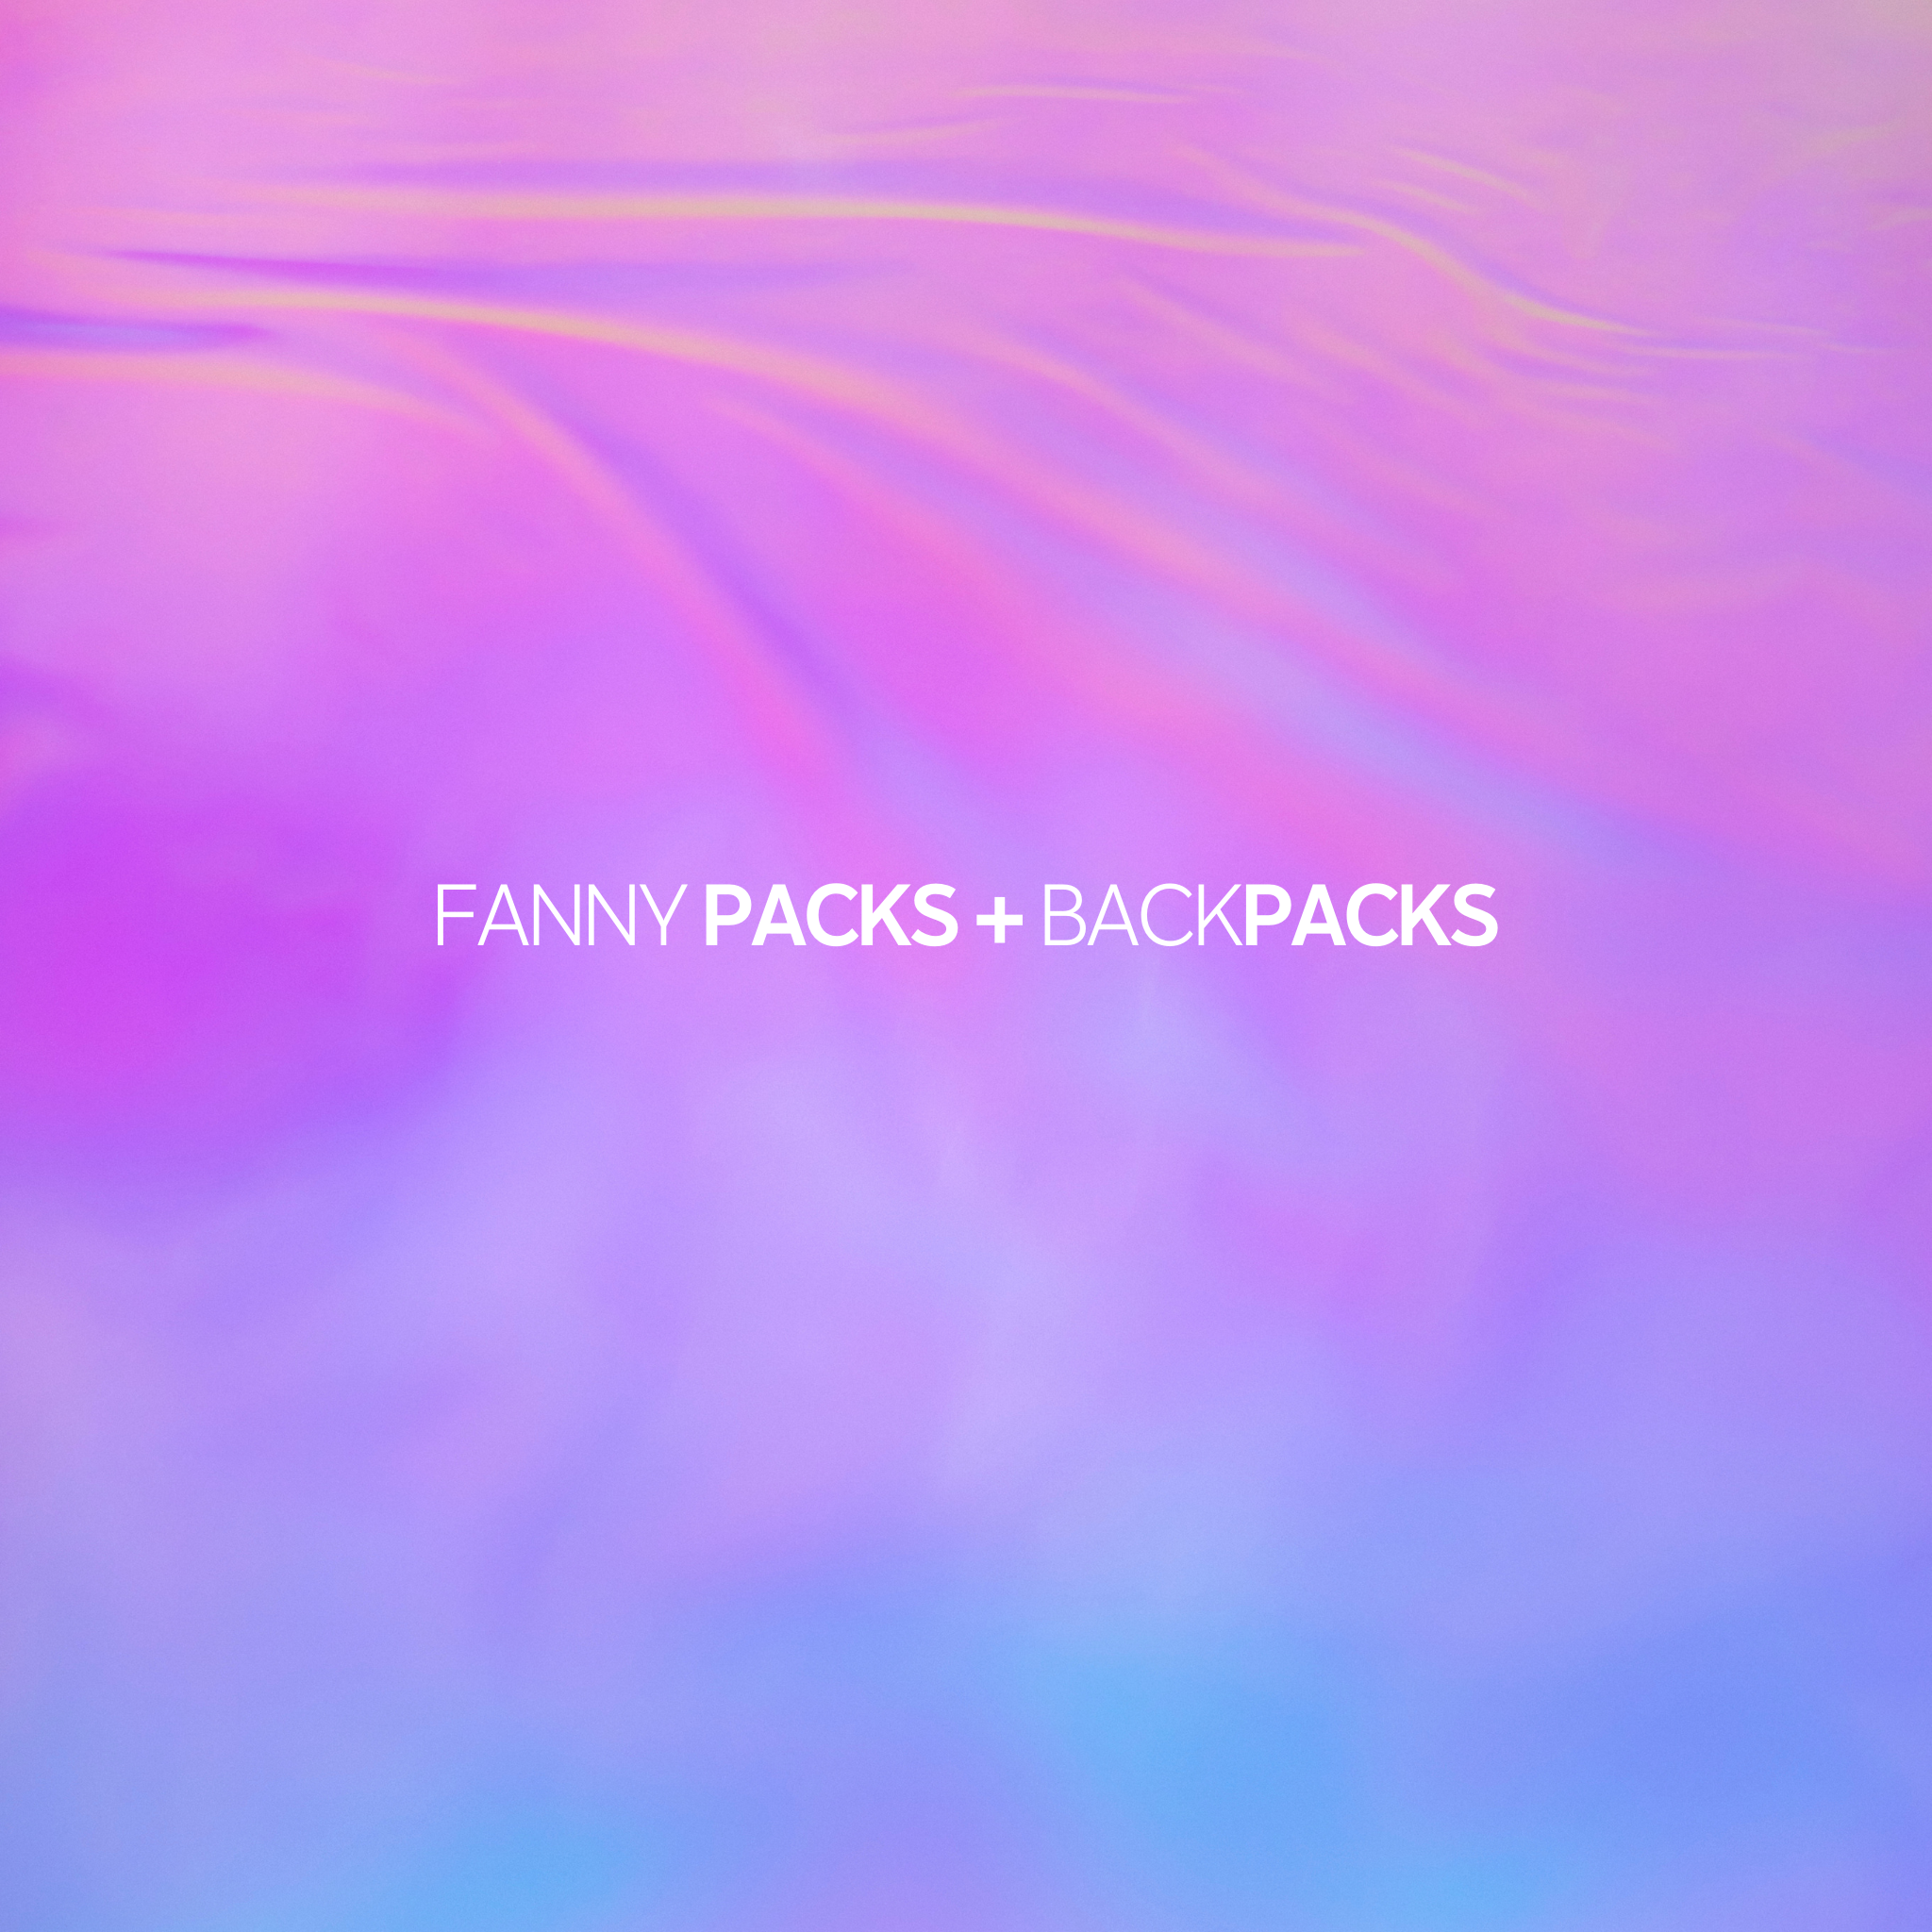 FANNY PACKS + BACKPACKS